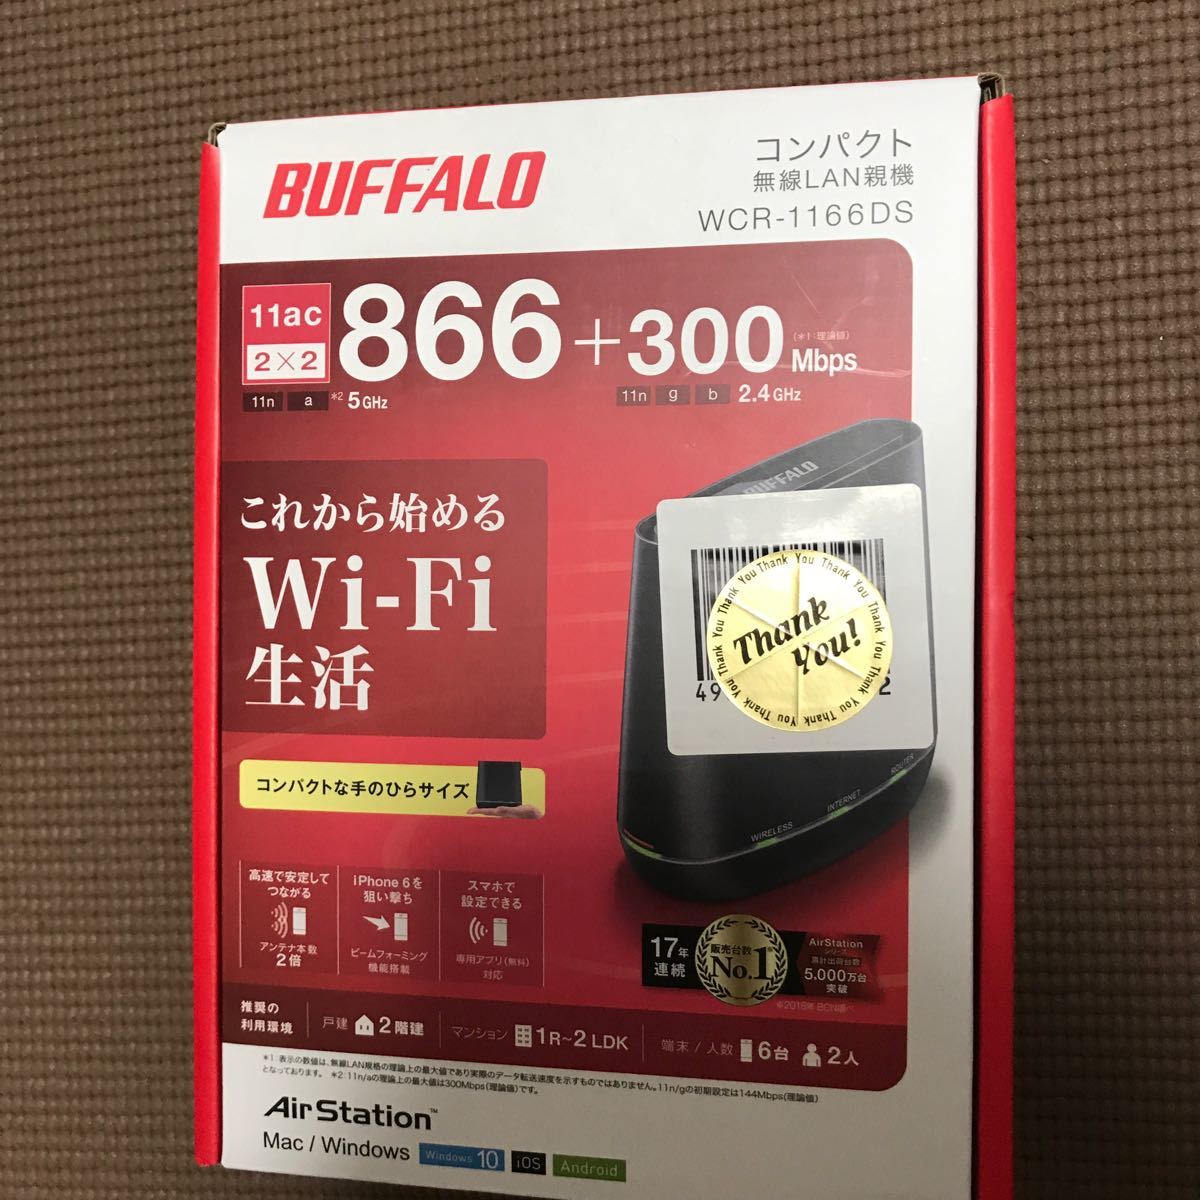 バッファロー BUFFALO  WCR-1166DS コンパクト Wi-Fiルーター WiFi 無線LANルーター